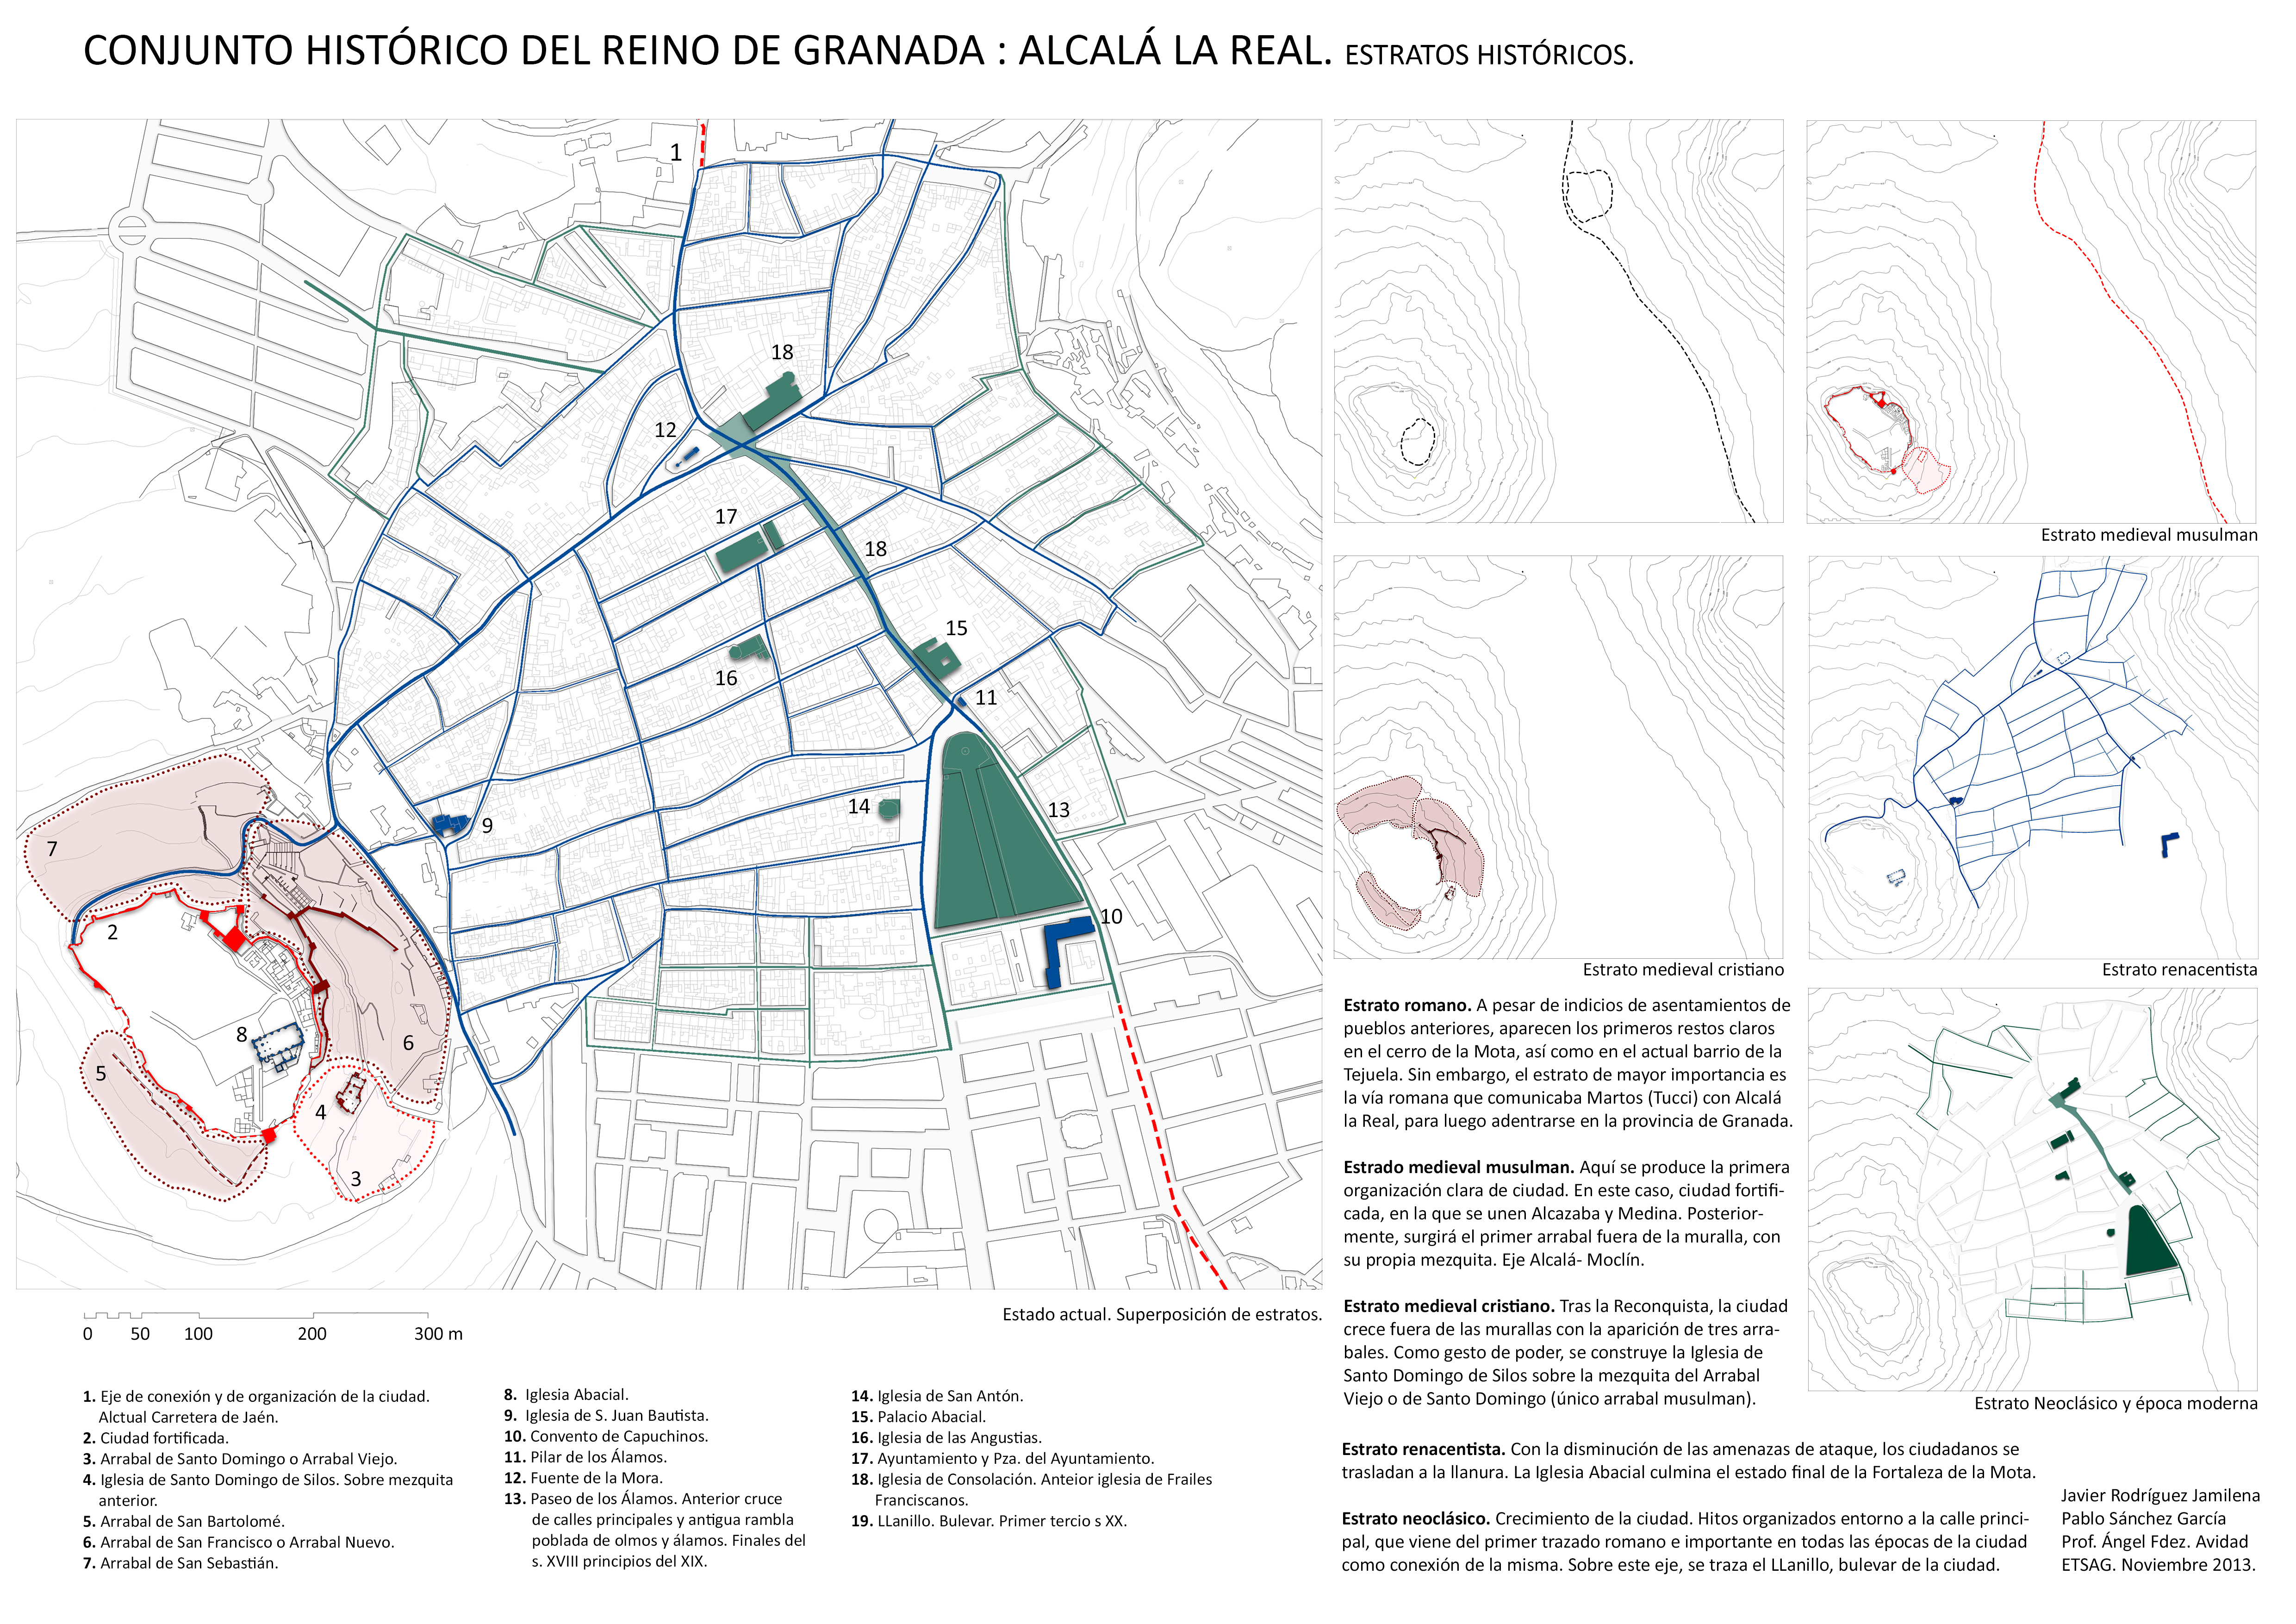 Conjunto histórico: Alcalá la Real. Estratos históricos.